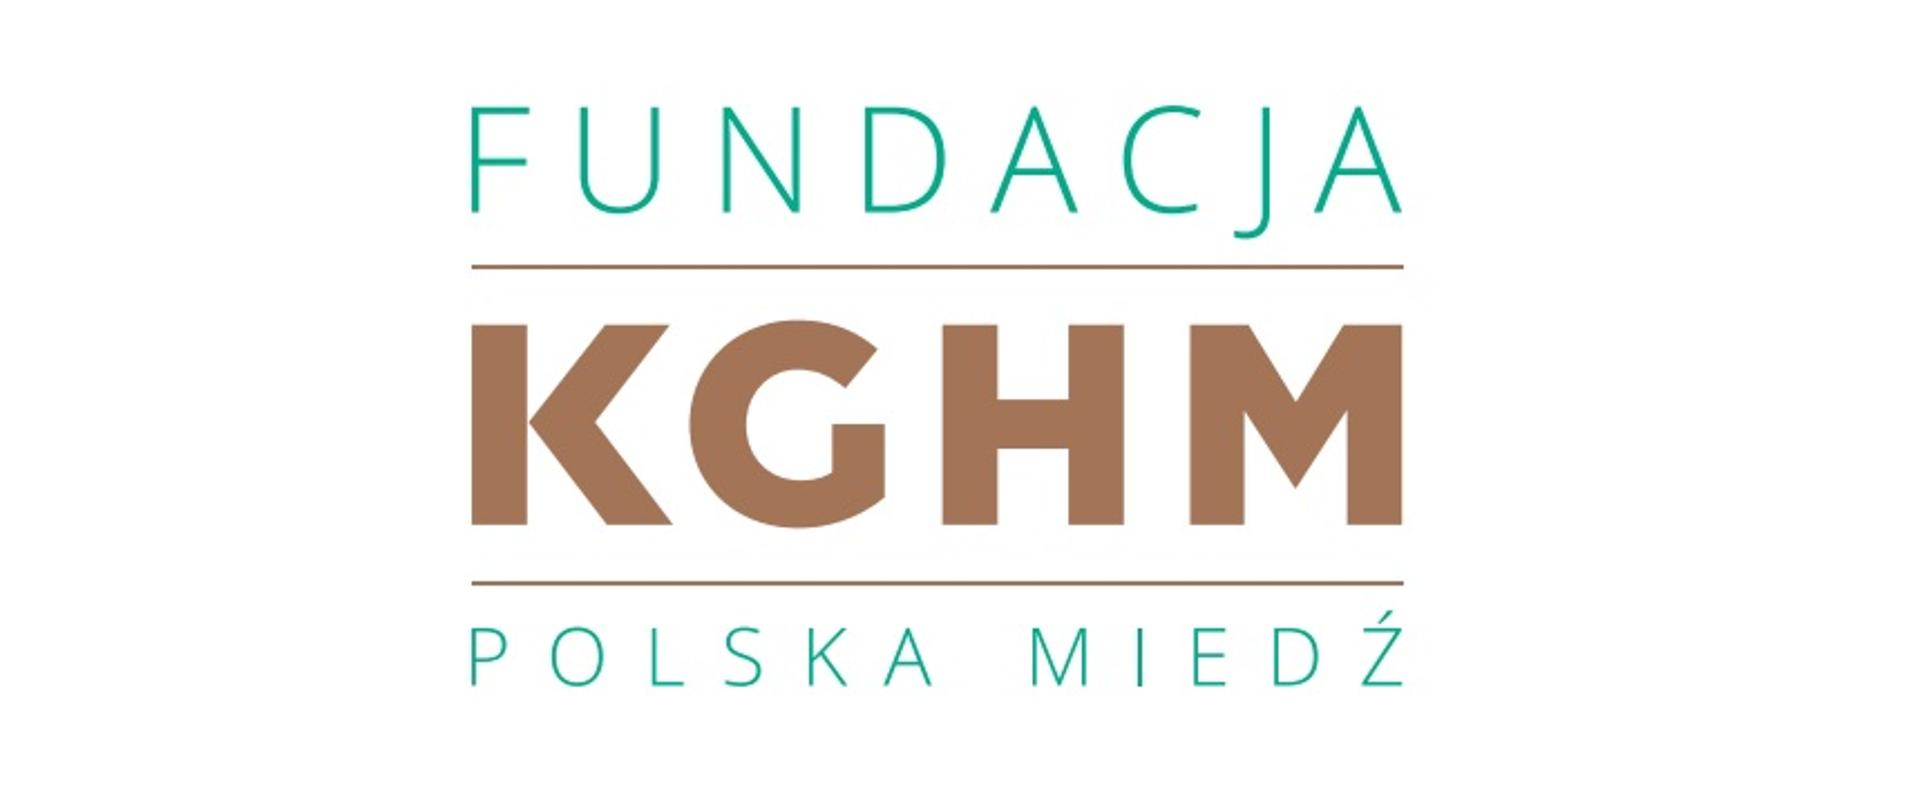 Dofinansowanie zakupu hełmów przez Fundację KGHM Polska Miedź